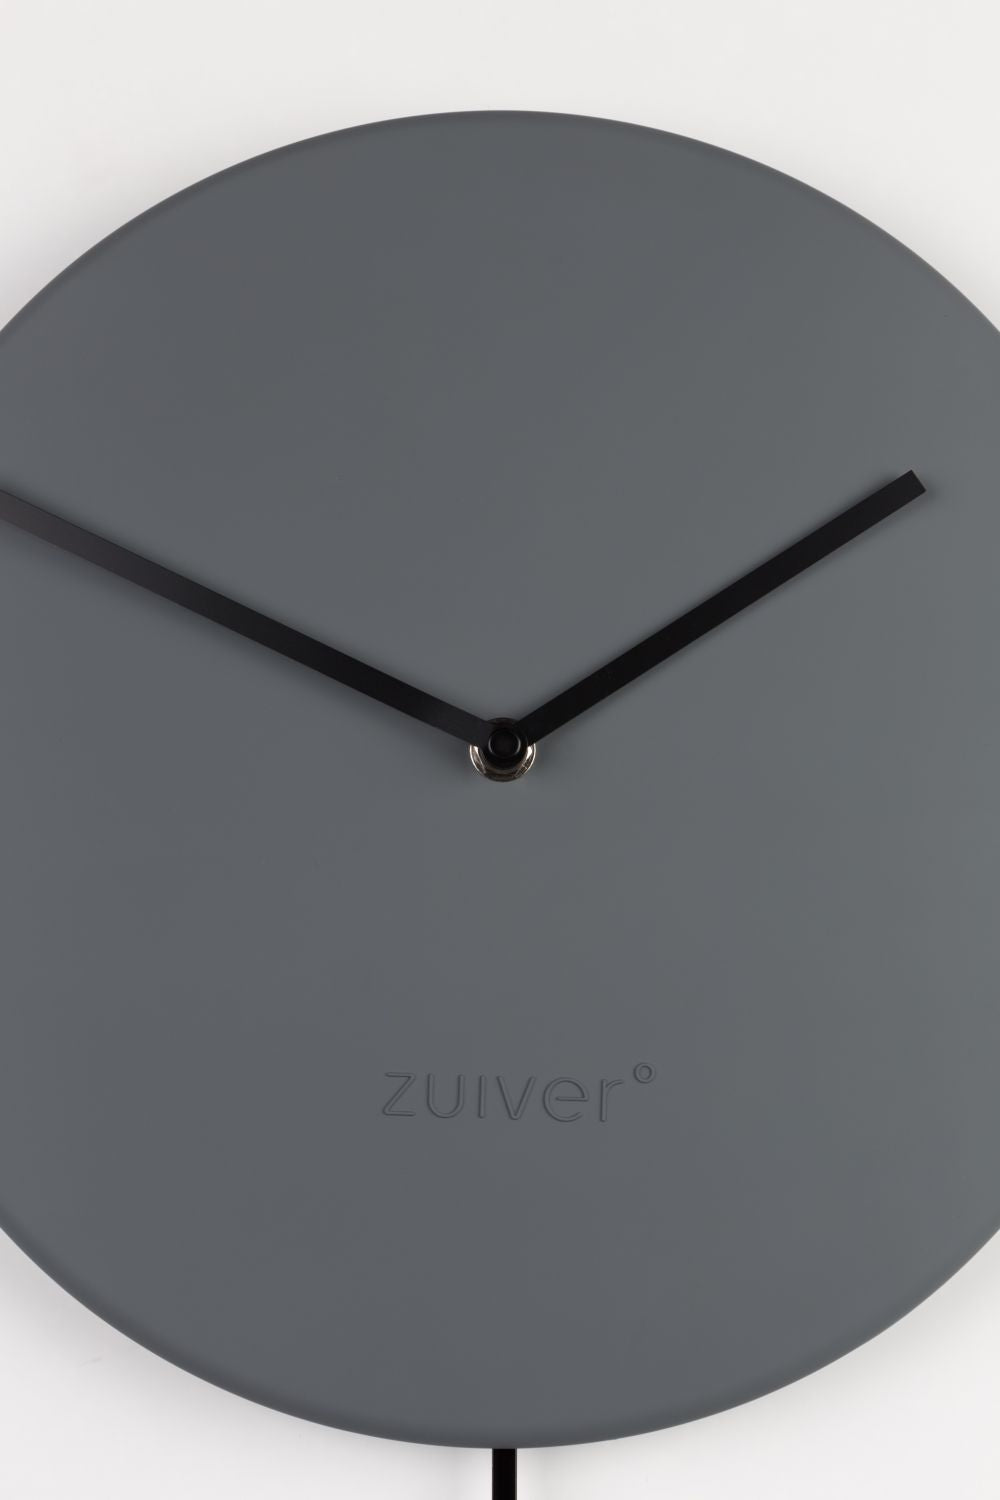  Zuiver-Zuiver Minimal Clock Grey-Grey 09 